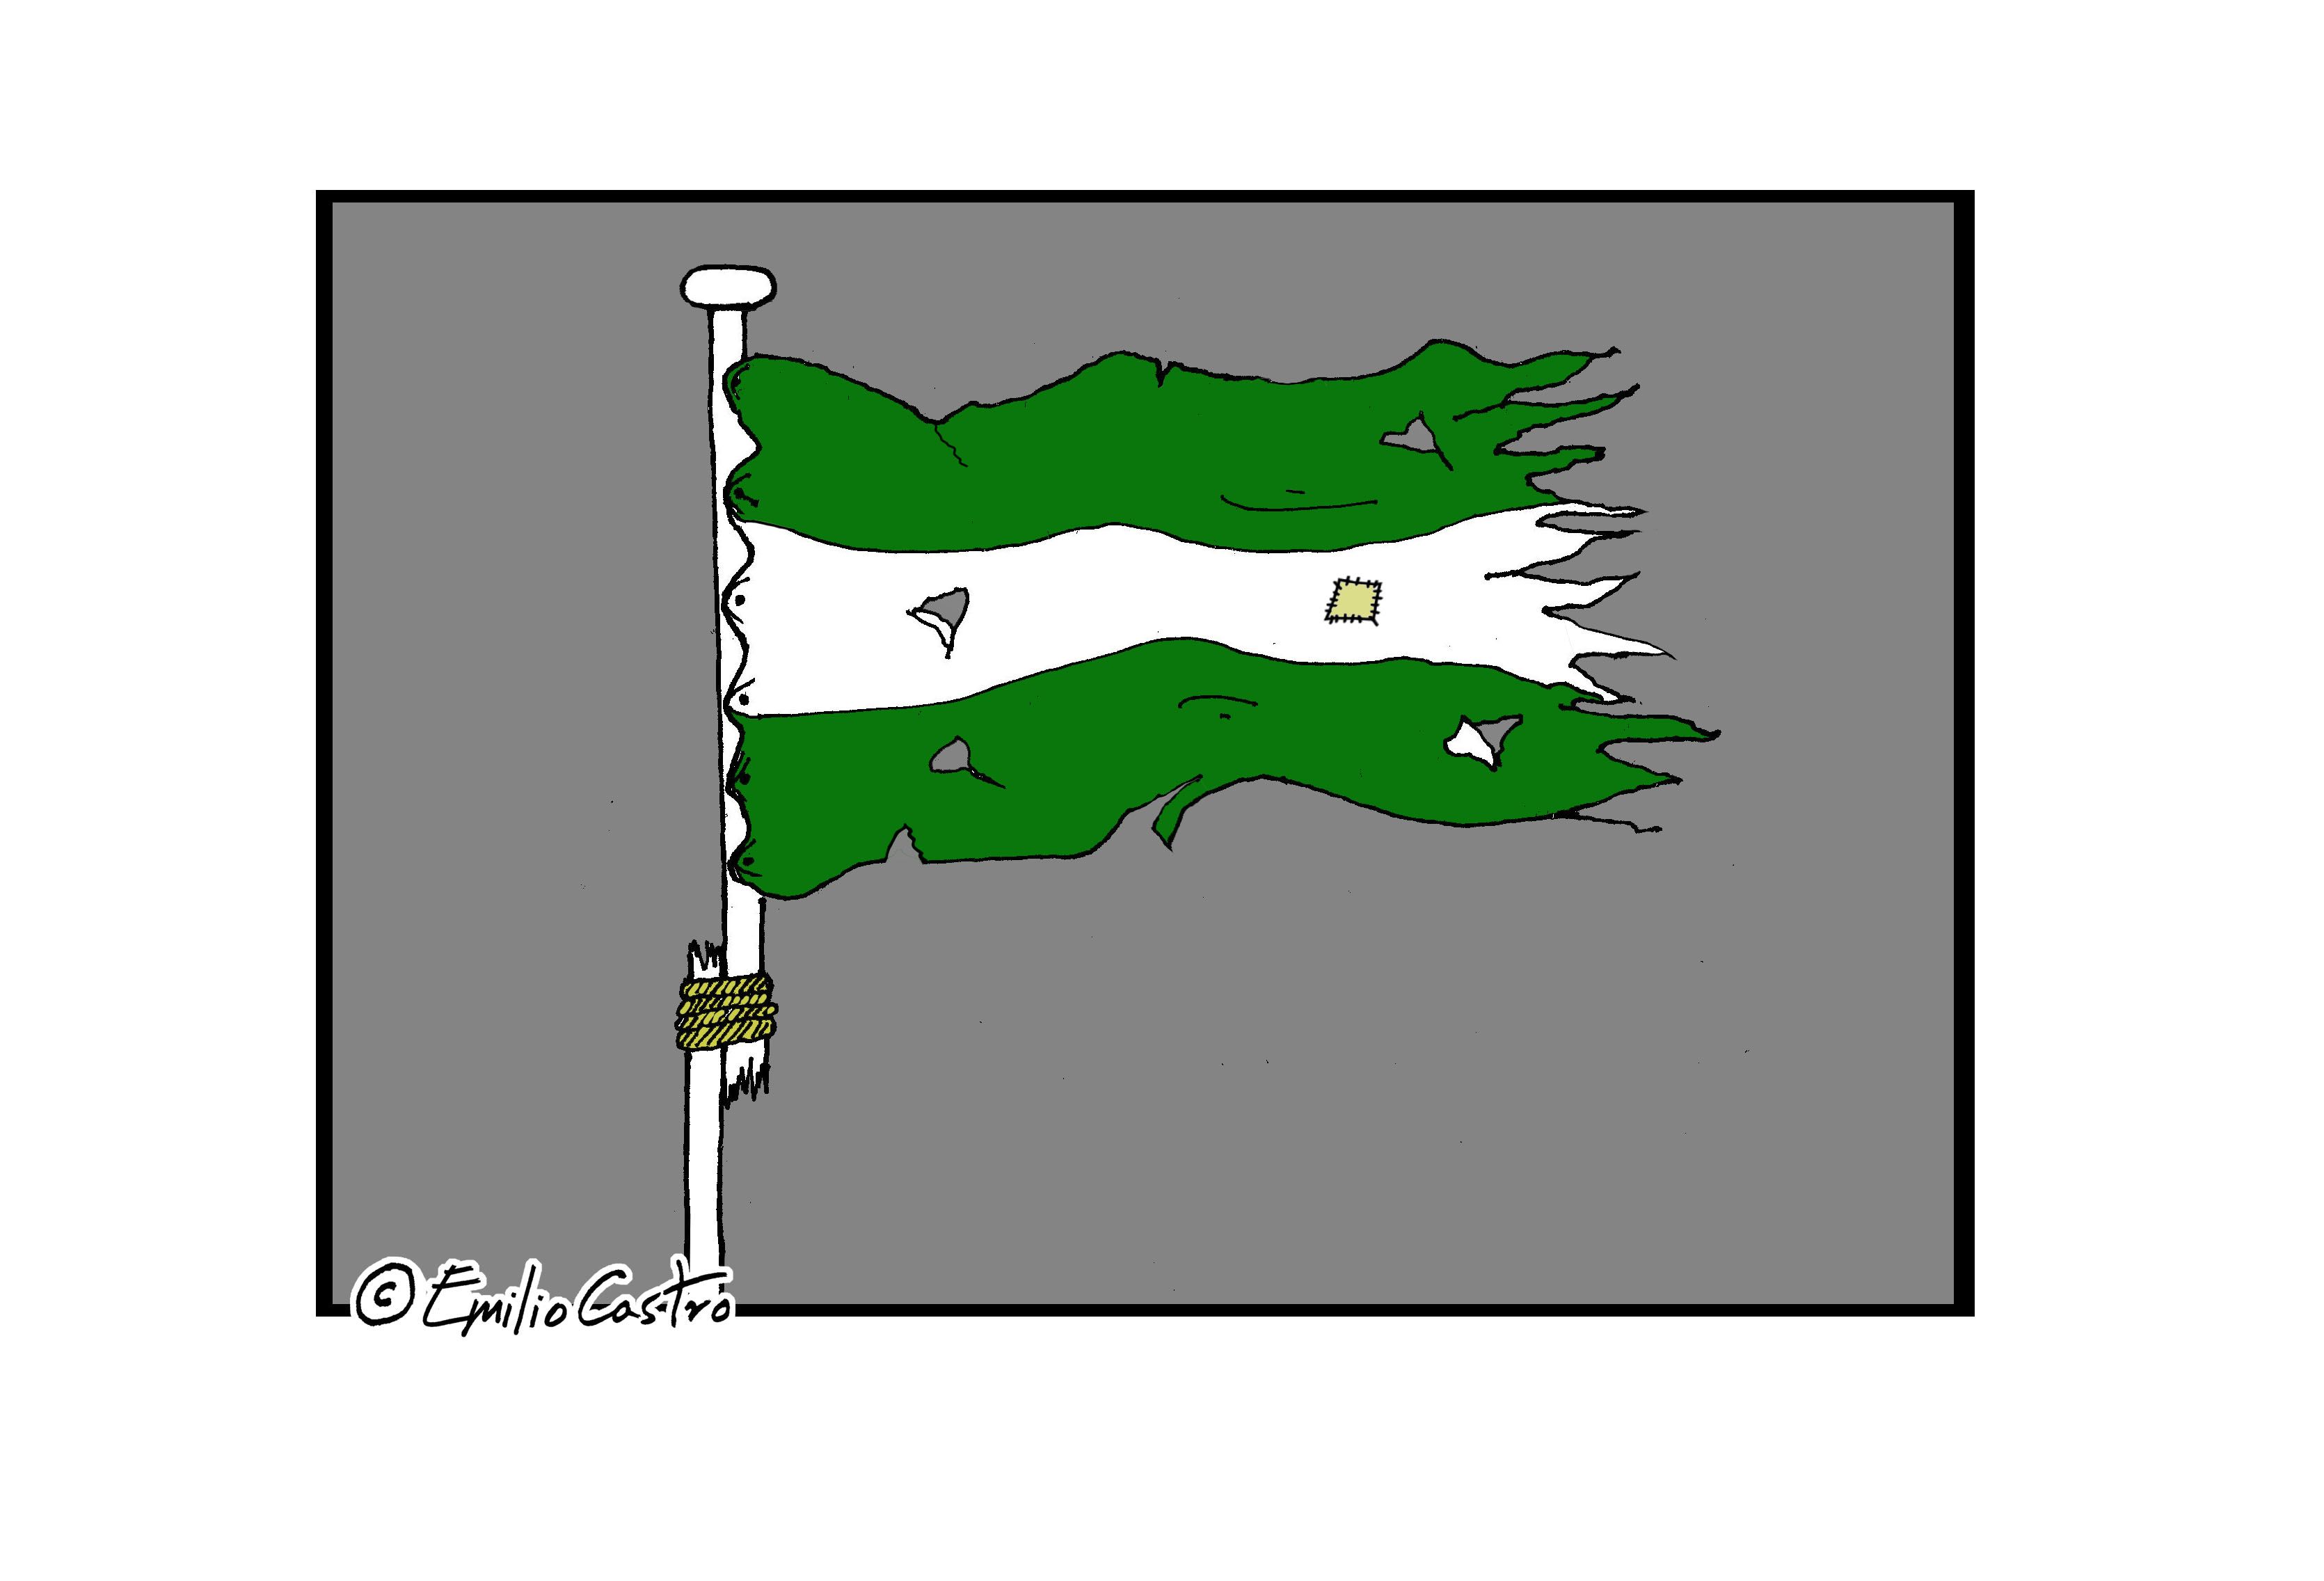 La Bandera, de Emilio Castro.